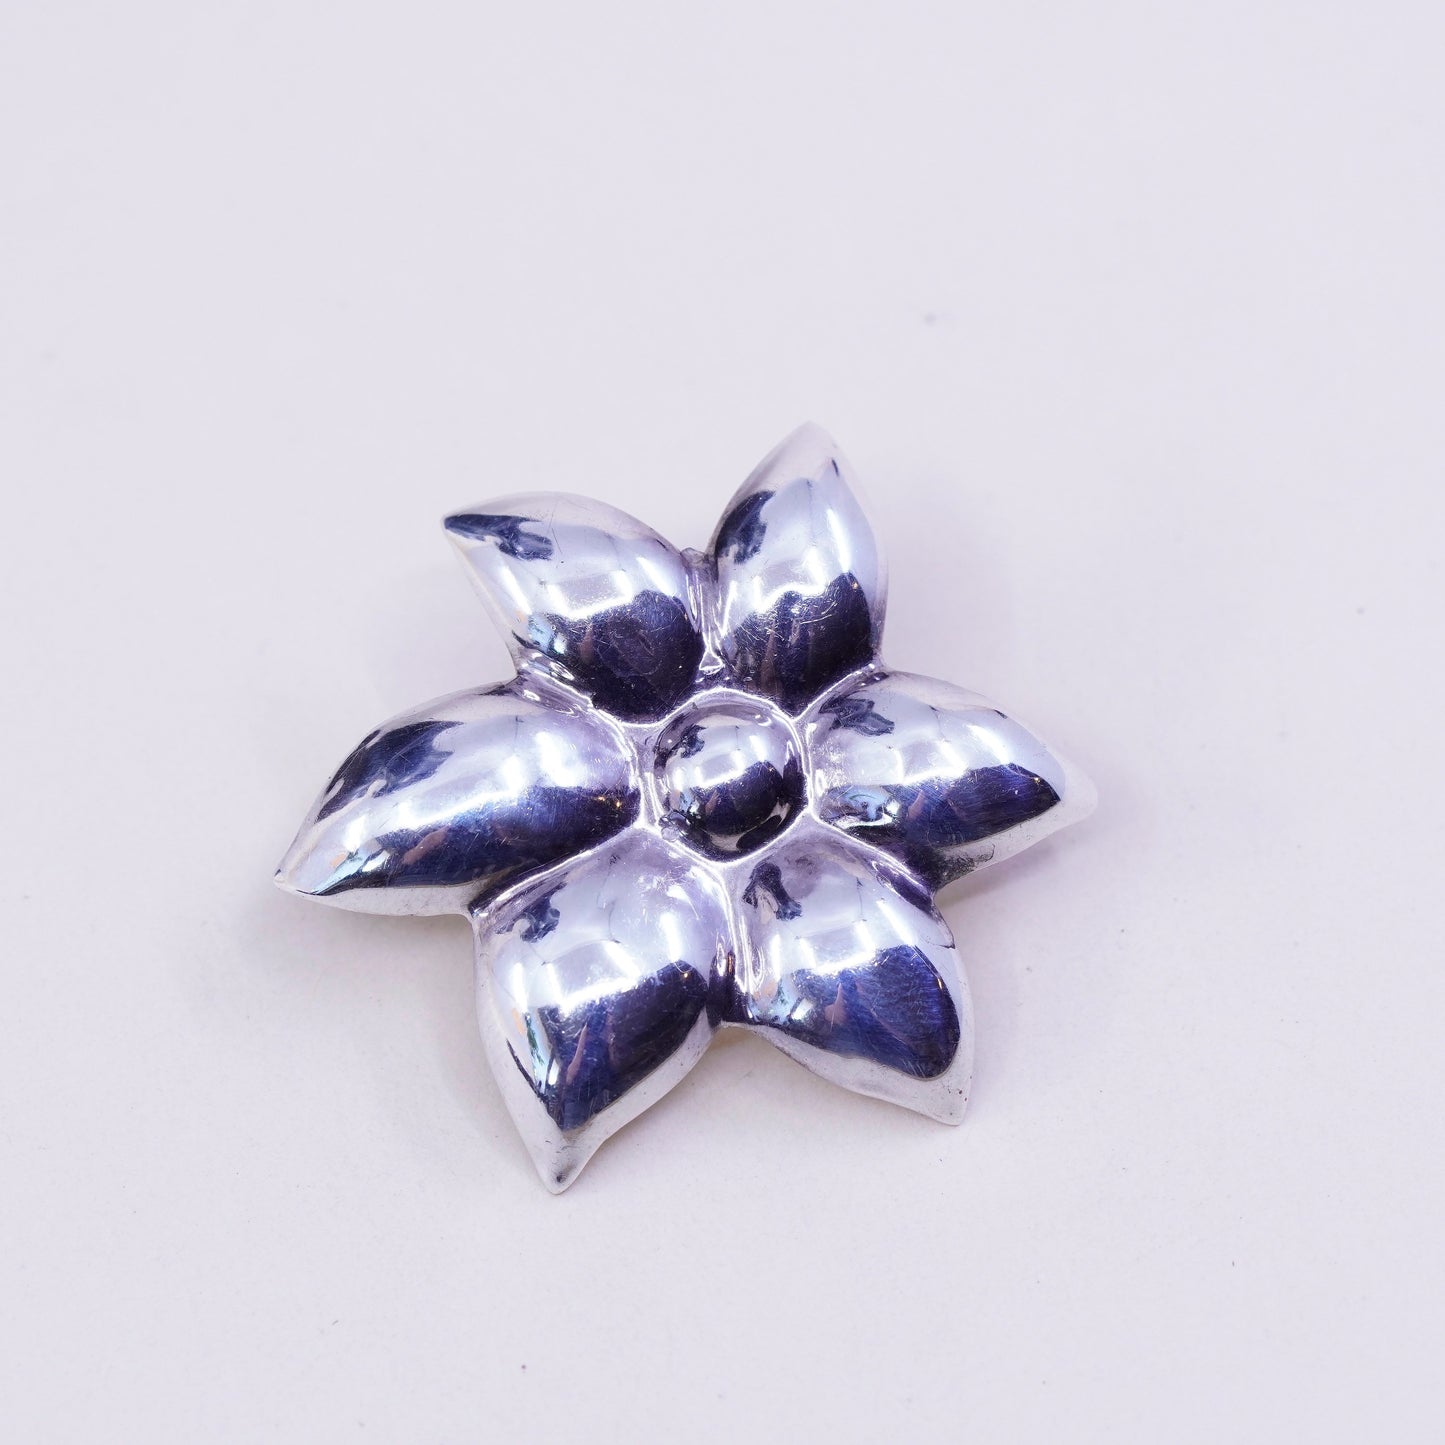 Vintage Sterling silver handmade earrings, 925 origami flower studs